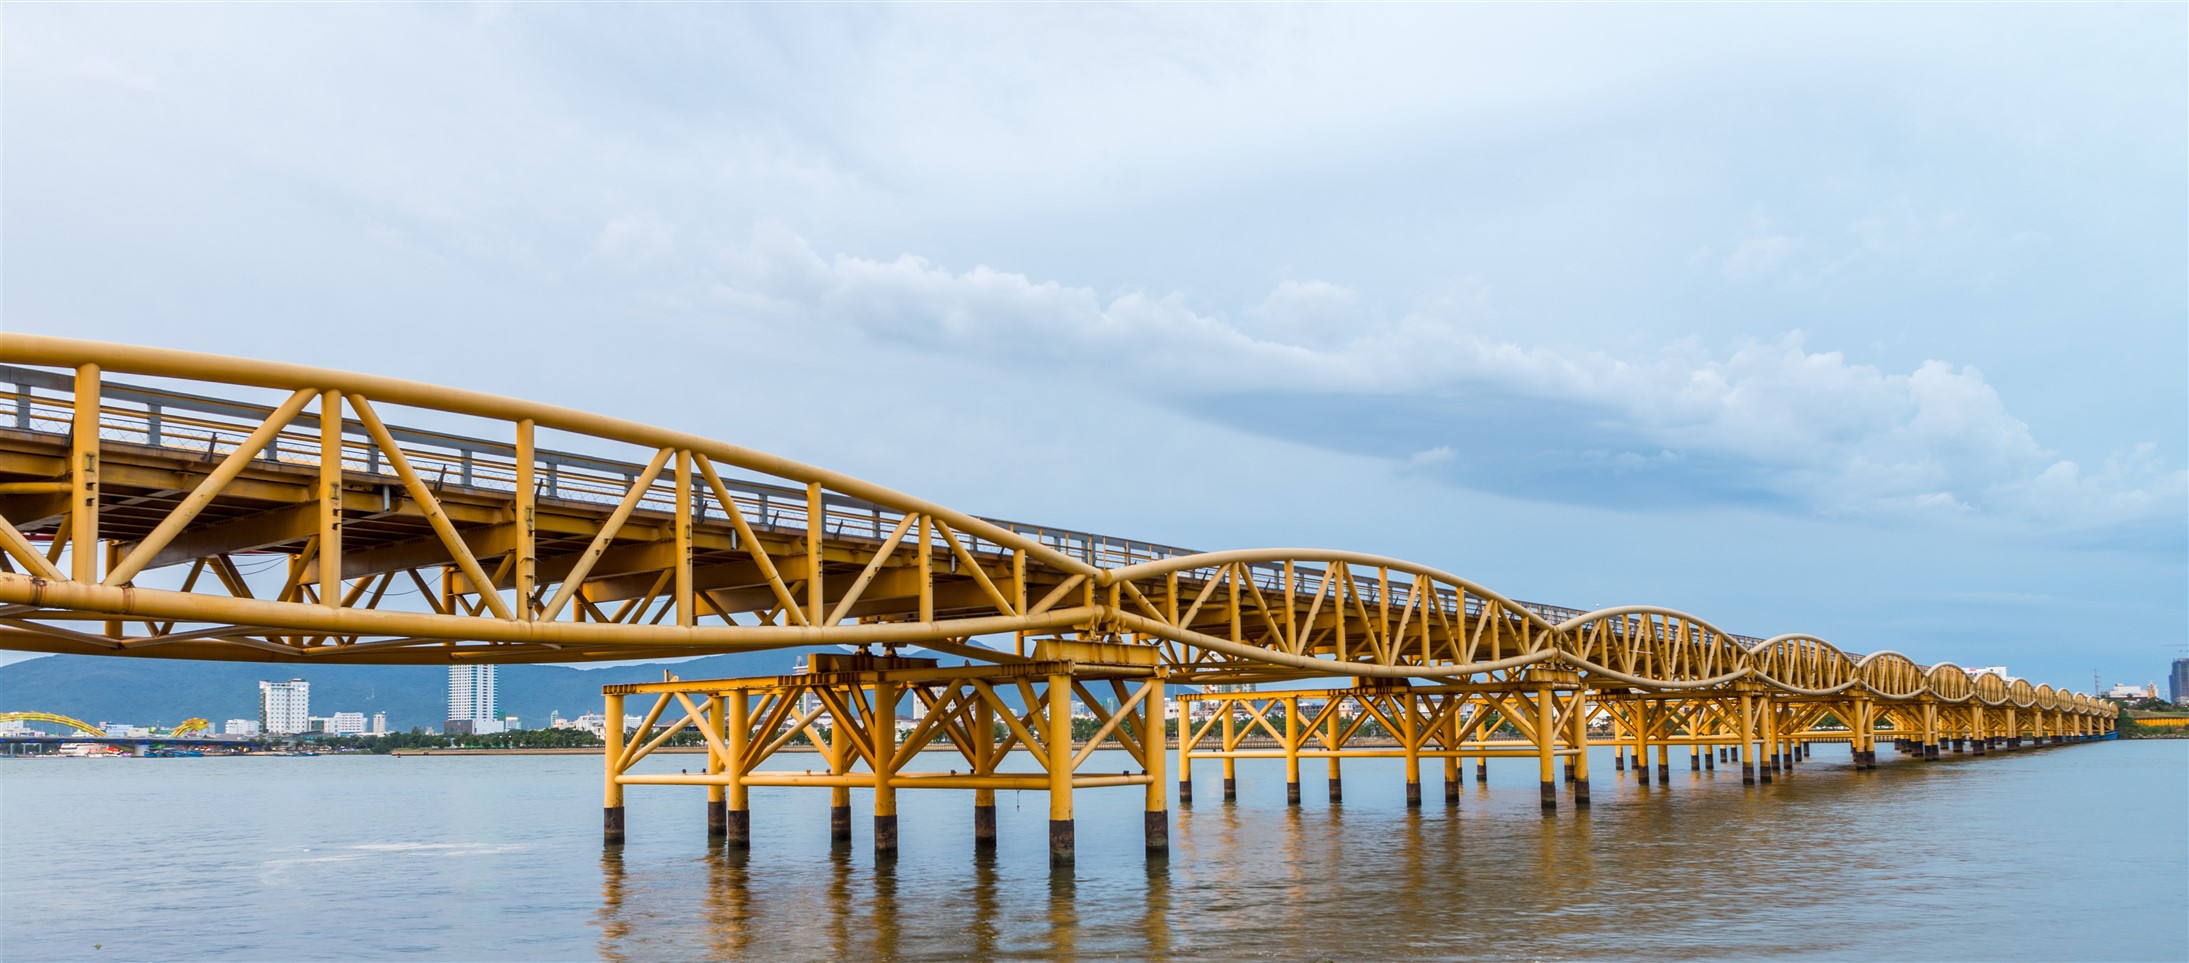 Cầu Nguyễn Văn Trỗi nối đôi bờ sông Hàn. (Ảnh: Dreamtime)